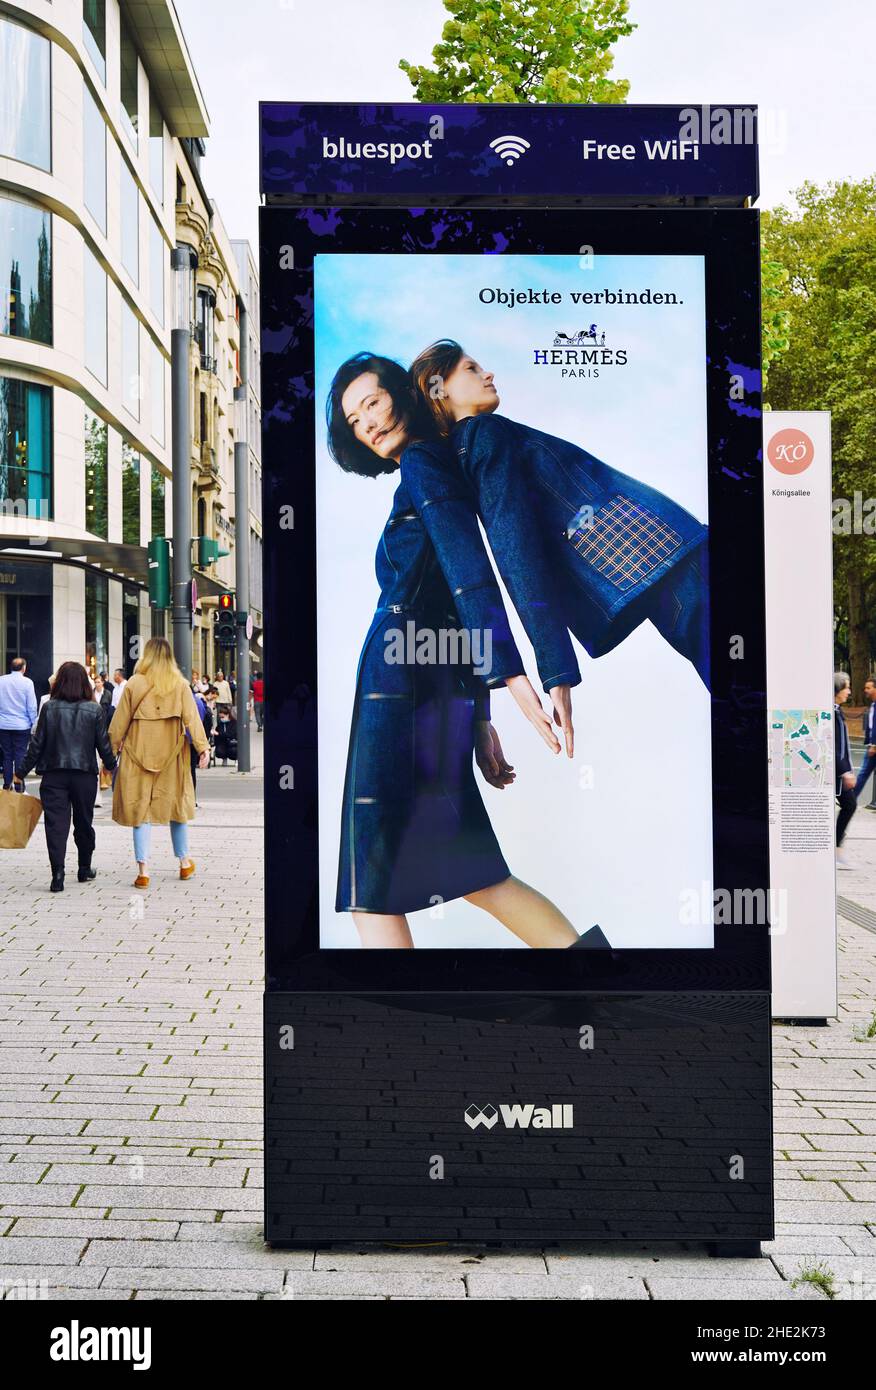 El bulevar comercial Königsallee en Düsseldorf/Alemania con la moderna pared de publicidad digital / bluespot WiFi gratuito. Foto de stock